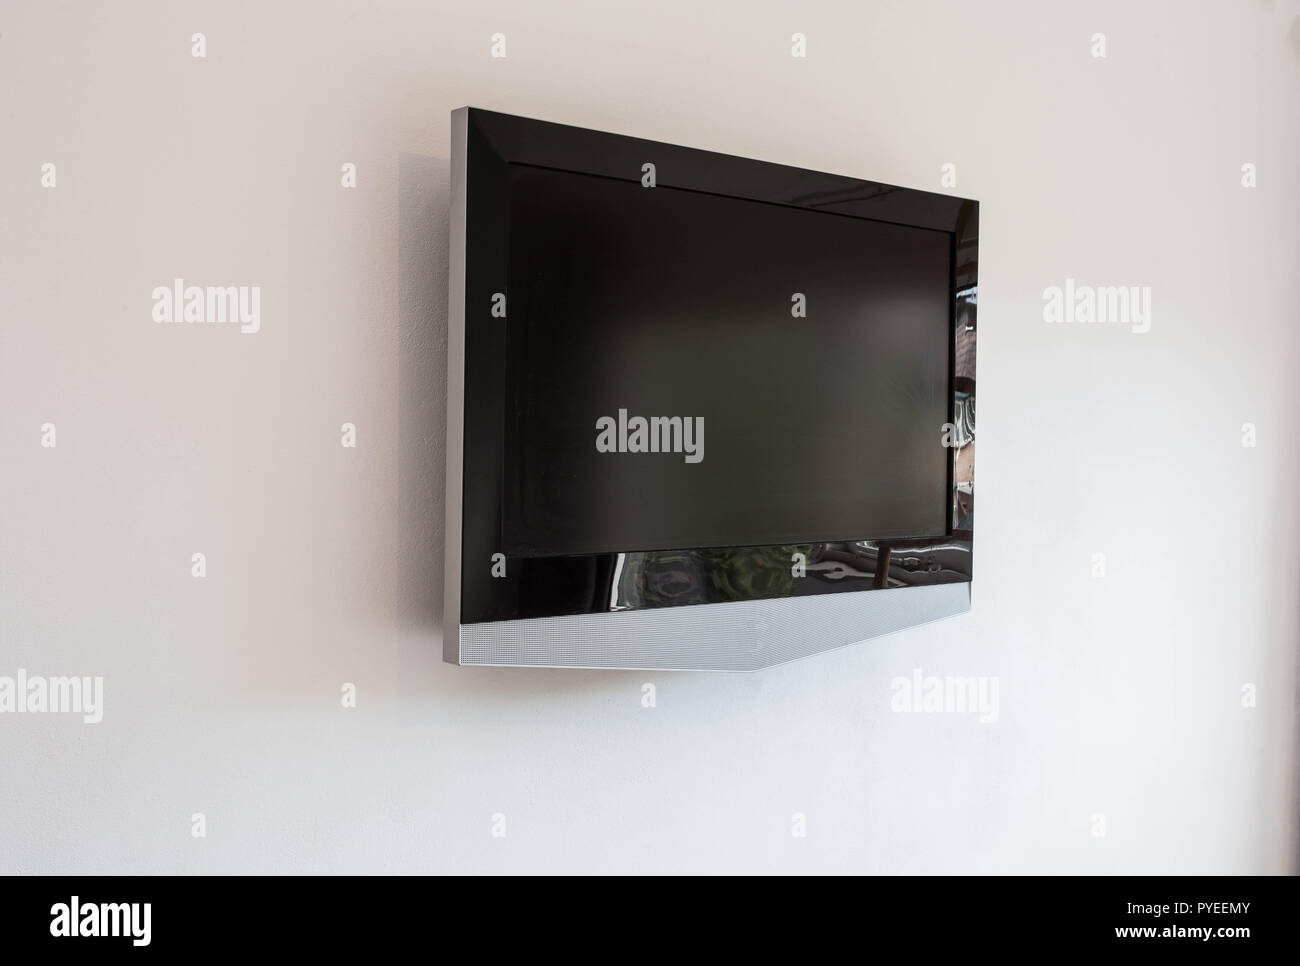 Nero Led tv schermo televisivo mockup mock up, vuoto sul muro bianco sullo sfondo Foto Stock